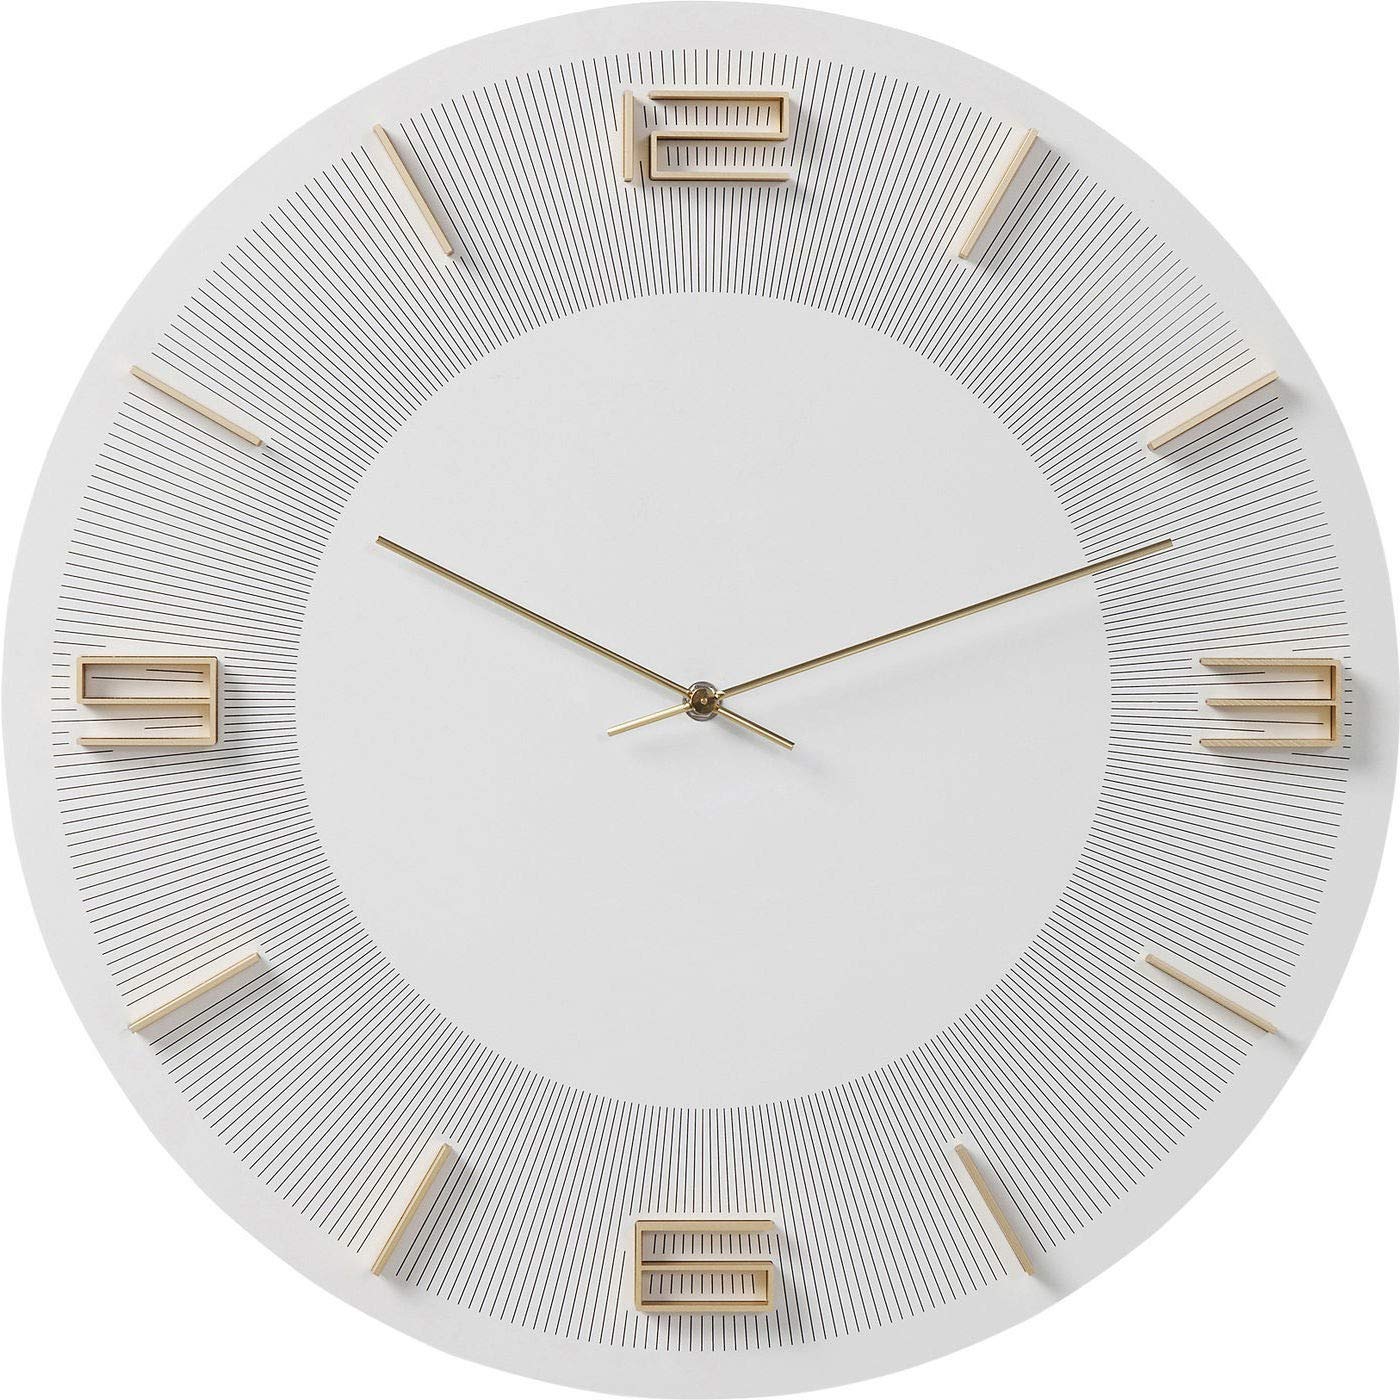 Kare Design Wanduhr Leonardo, Weiß/Gold, 49cm Durchmesser, Uhr, Holz, Aluminium, rund, 49x49x5 cm (H/B/T)